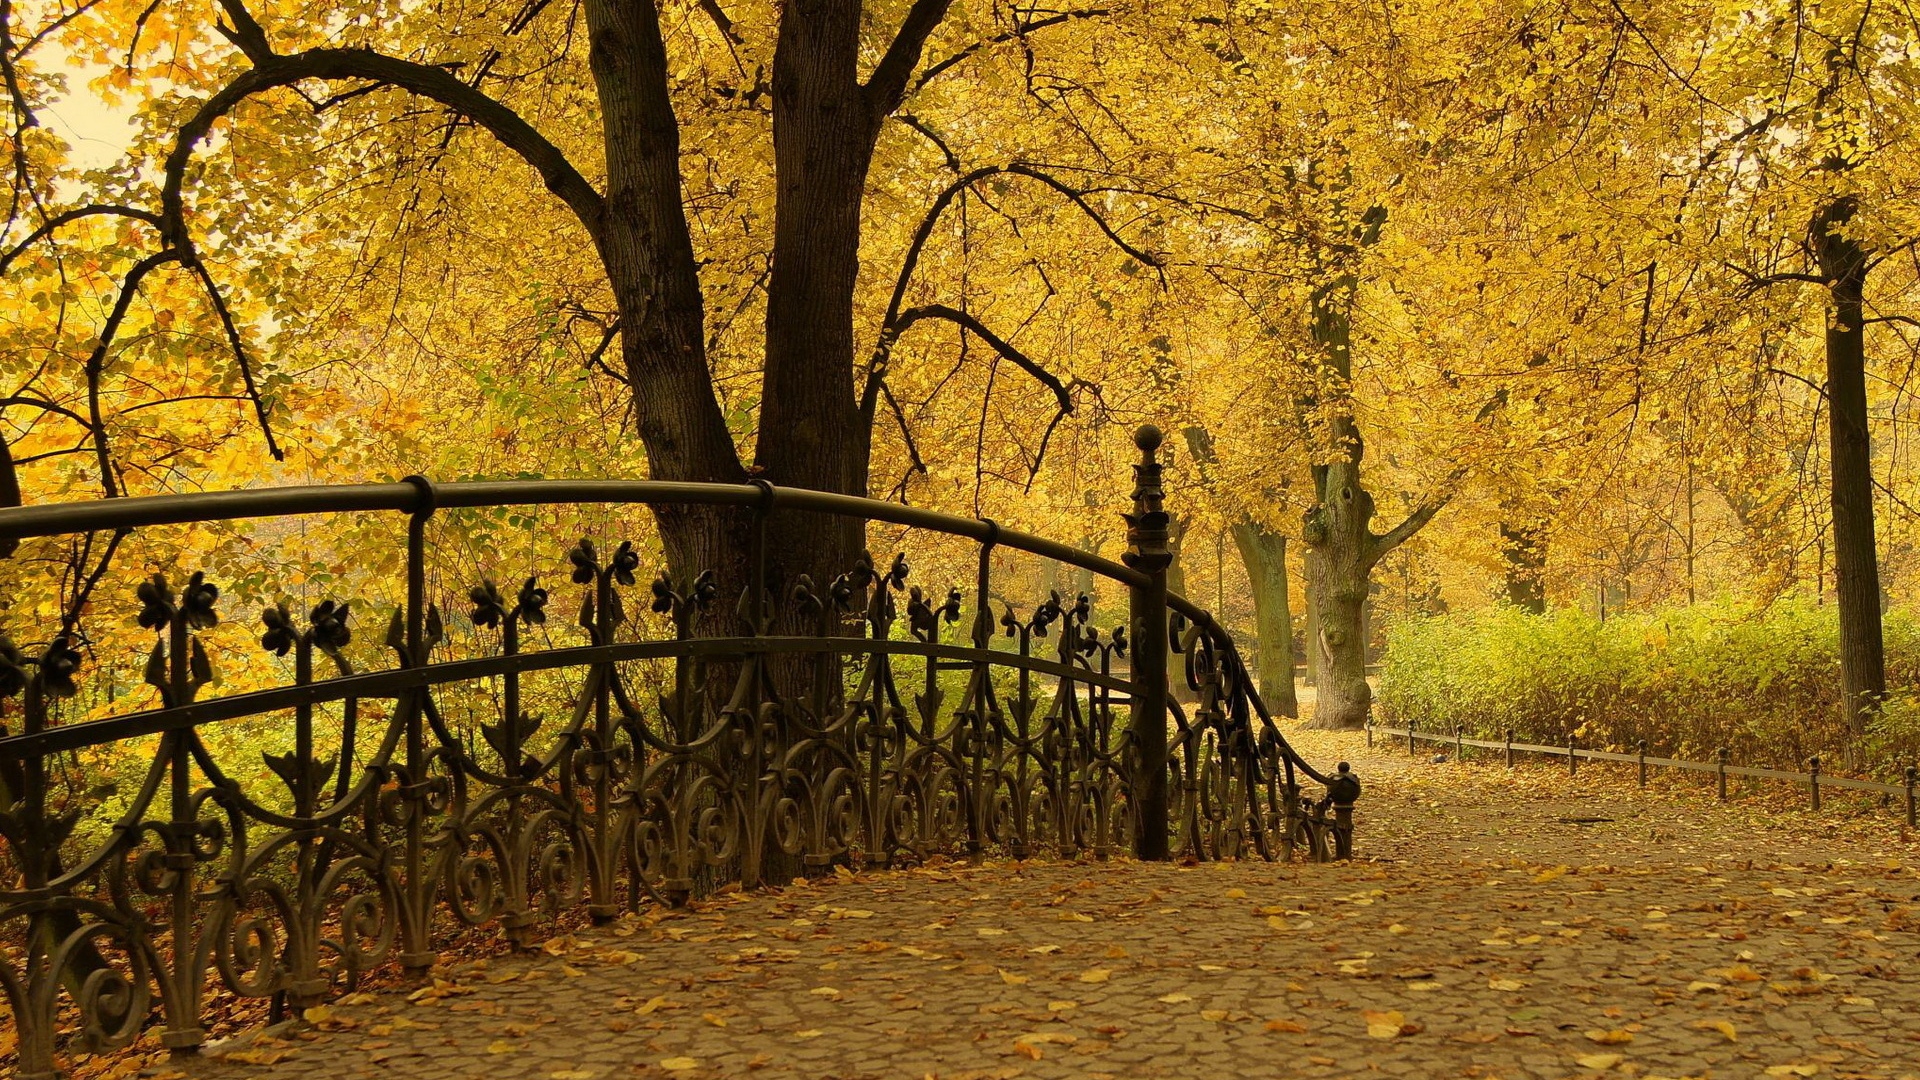 Скачать обои бесплатно Осень, Парк, Дерево, Ограда, Фотографии картинка на рабочий стол ПК